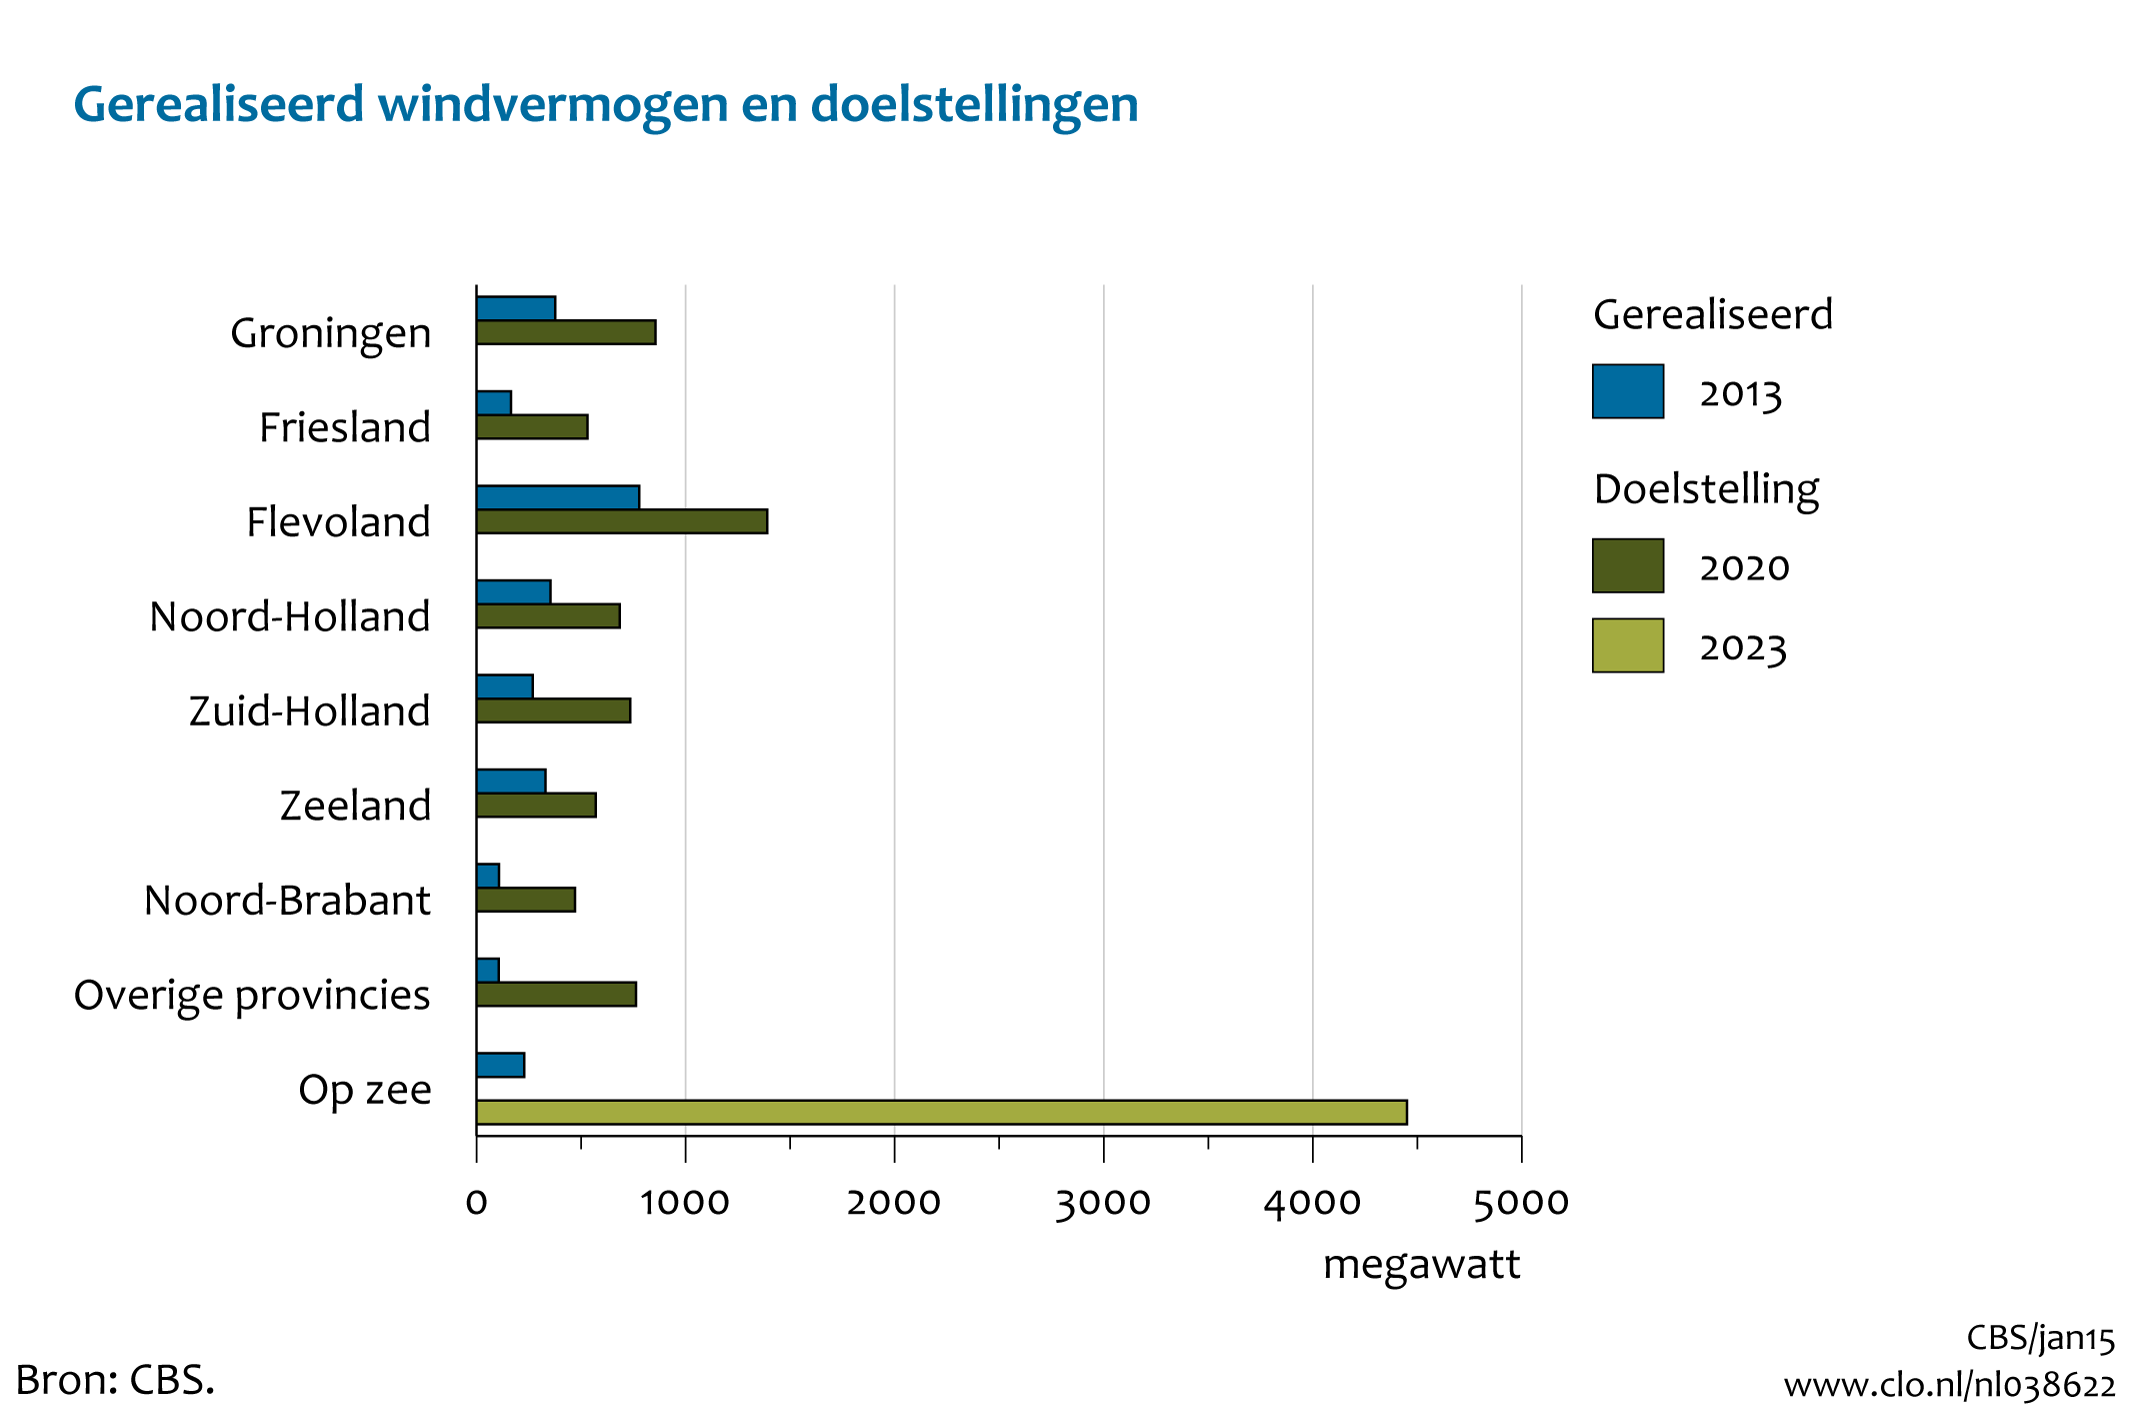 Figuur Windvermogen 2013 per provincie en op zee, incl. doelstellingen. In de rest van de tekst wordt deze figuur uitgebreider uitgelegd.